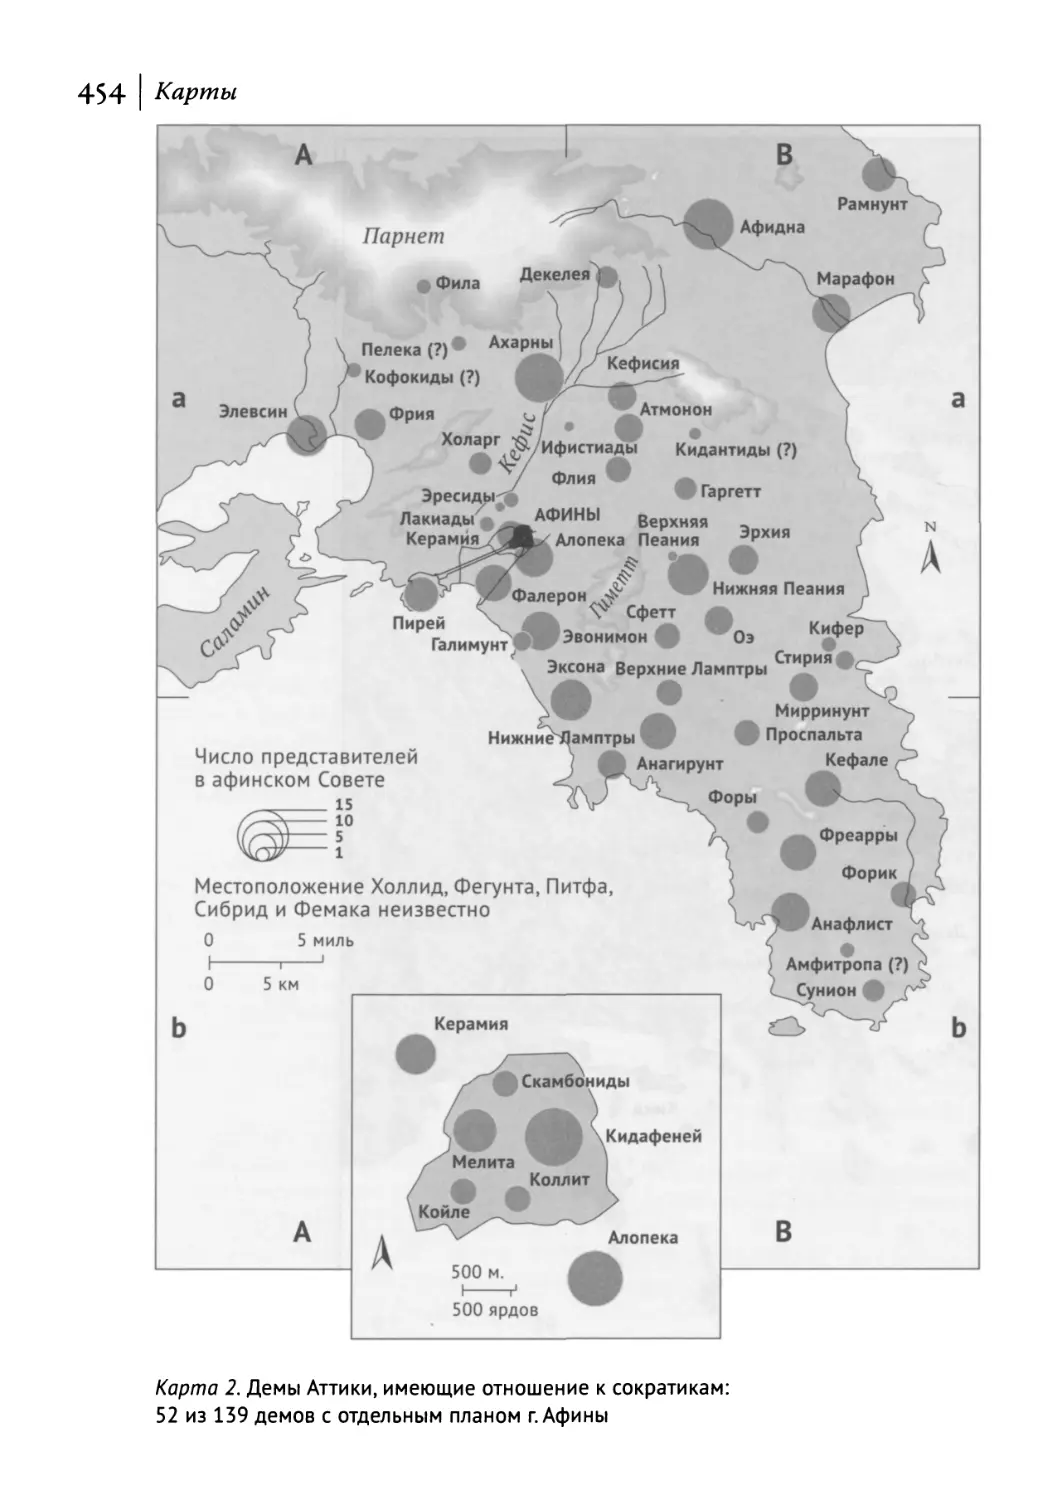 Карта 2. Демы Аттики, имеющие отношение к сократикам: 52 из 139 демов с отдельным планом г. Афины